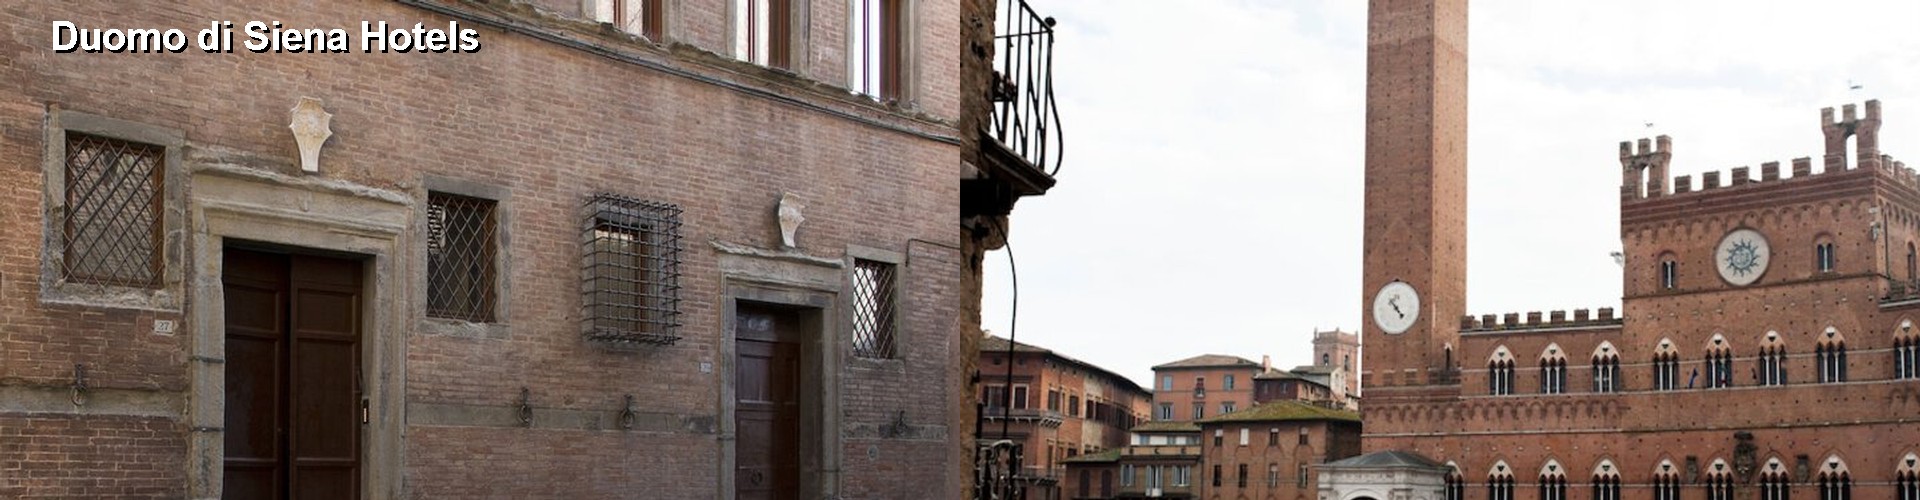 5 Best Hotels near Duomo di Siena